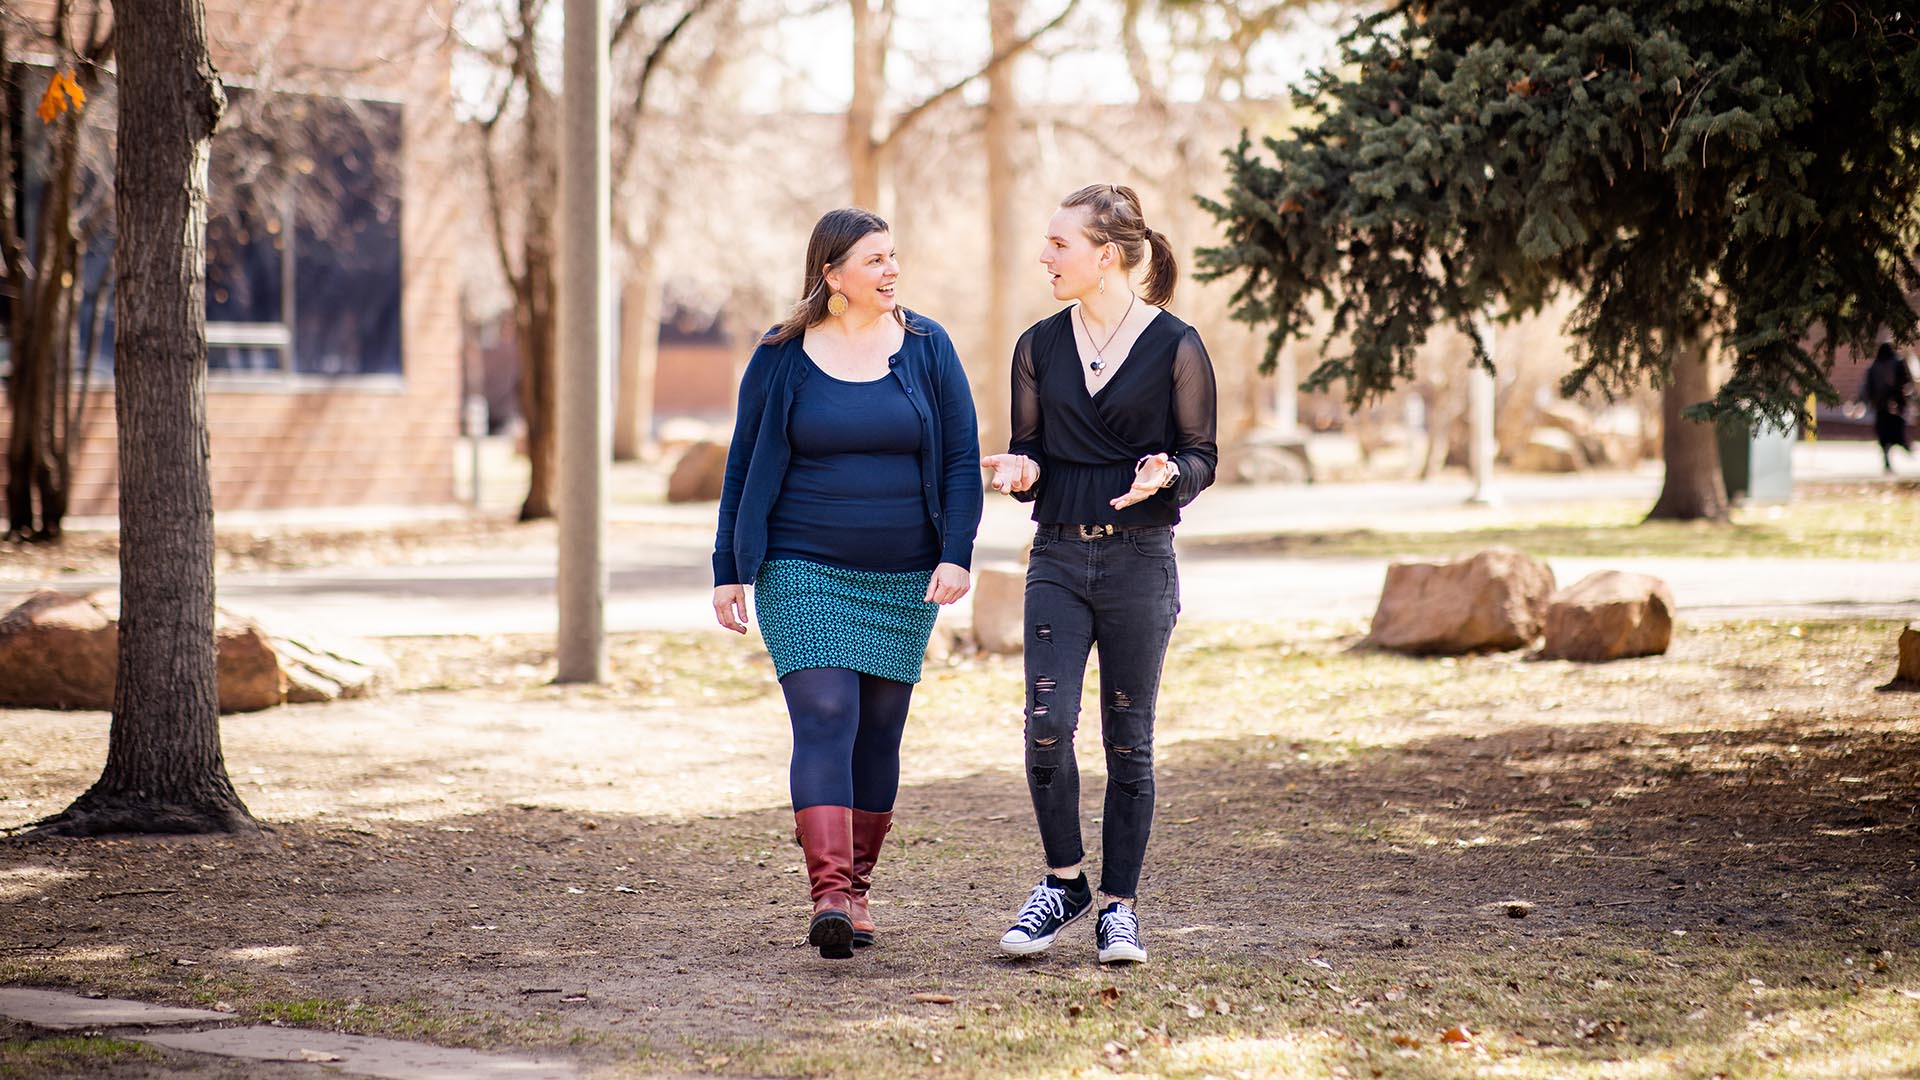 Grad students provide gender-affirming voice care for Denver’s trans community